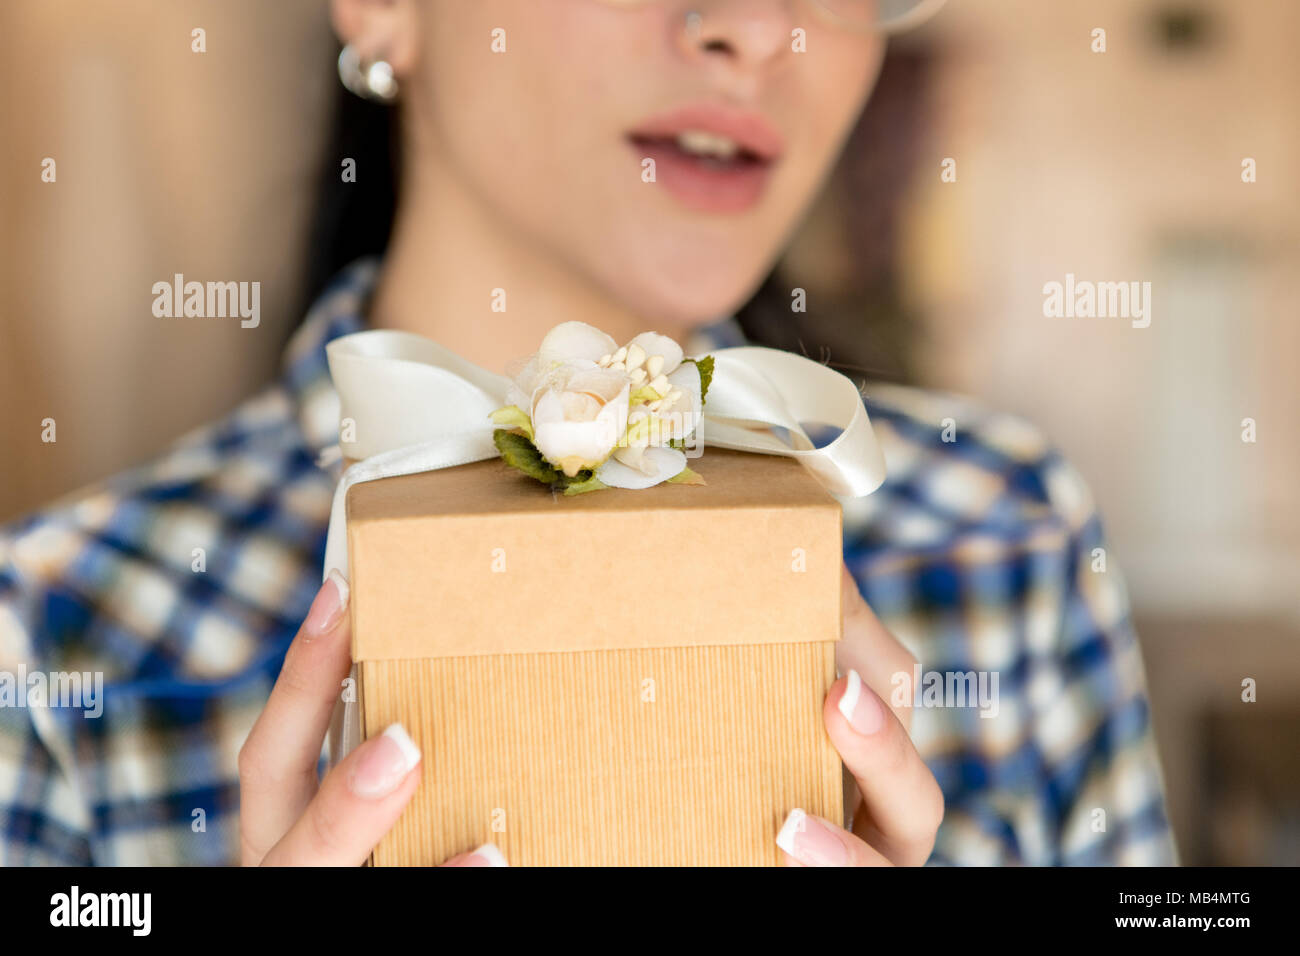 Frau Hände halten Geschenkbox menschliches Gesicht unscharf im Hintergrund Stockfoto